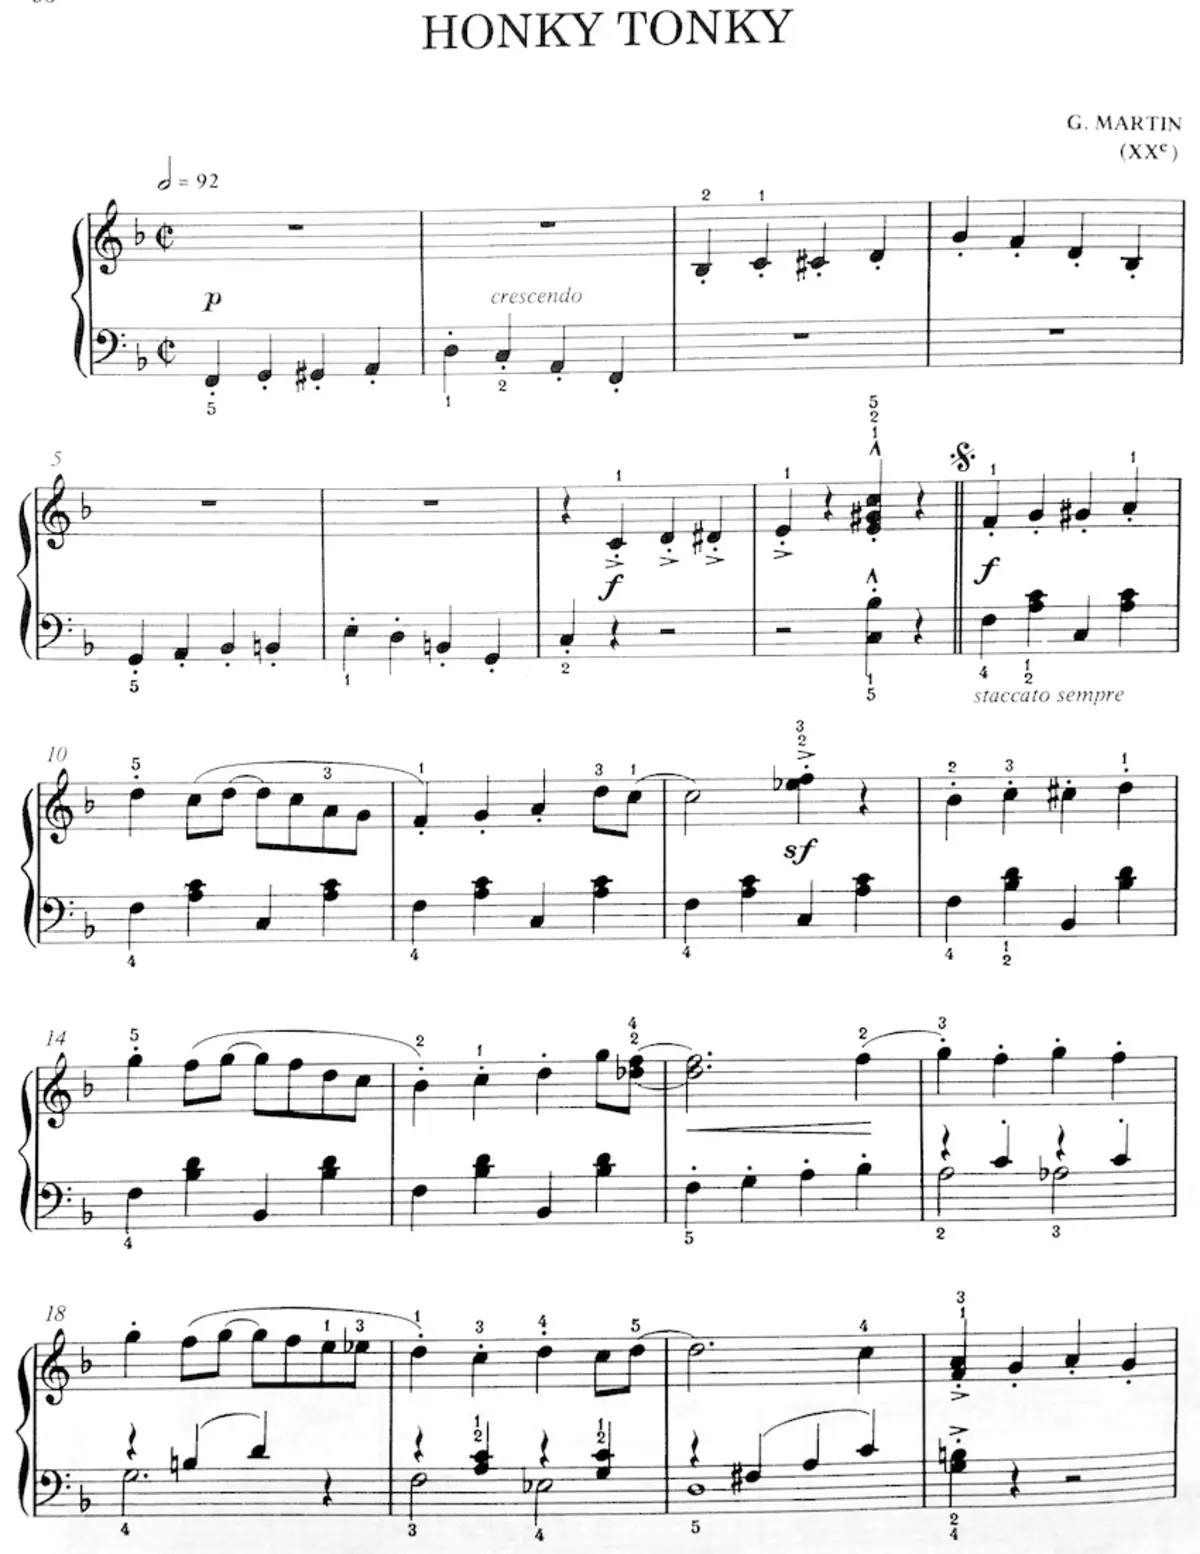 Jazz akkoorde vir klavier: koord rye op klavier, basiese pragtige akkoorde en komplekse, hul dekodering 25486_10